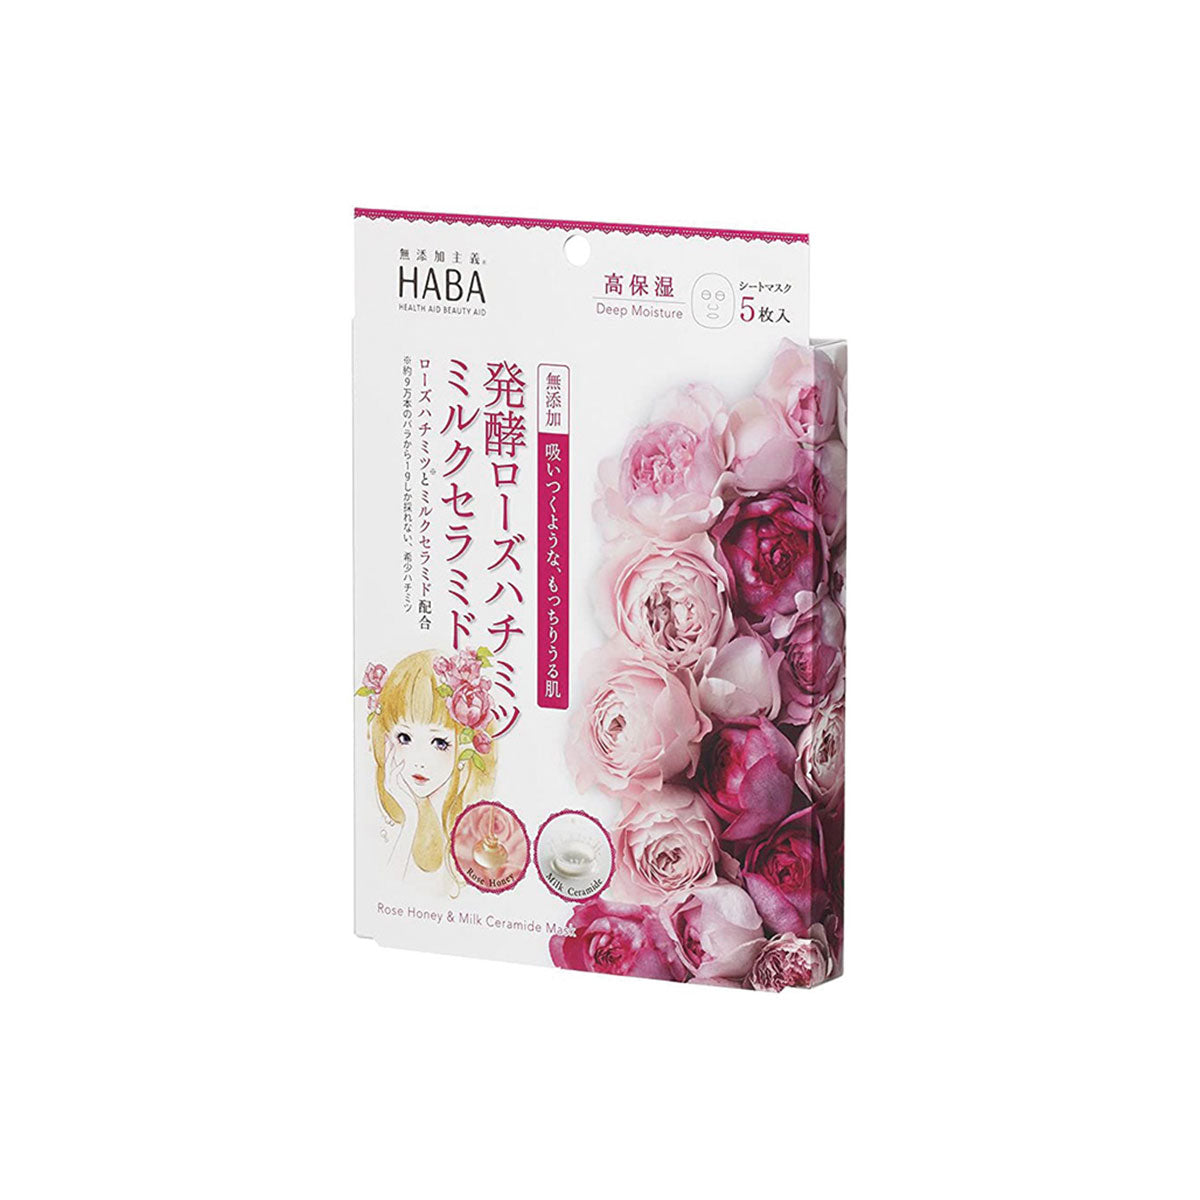 日本HABA玫瑰蜂蜜牛奶神经酰胺面膜 1 片